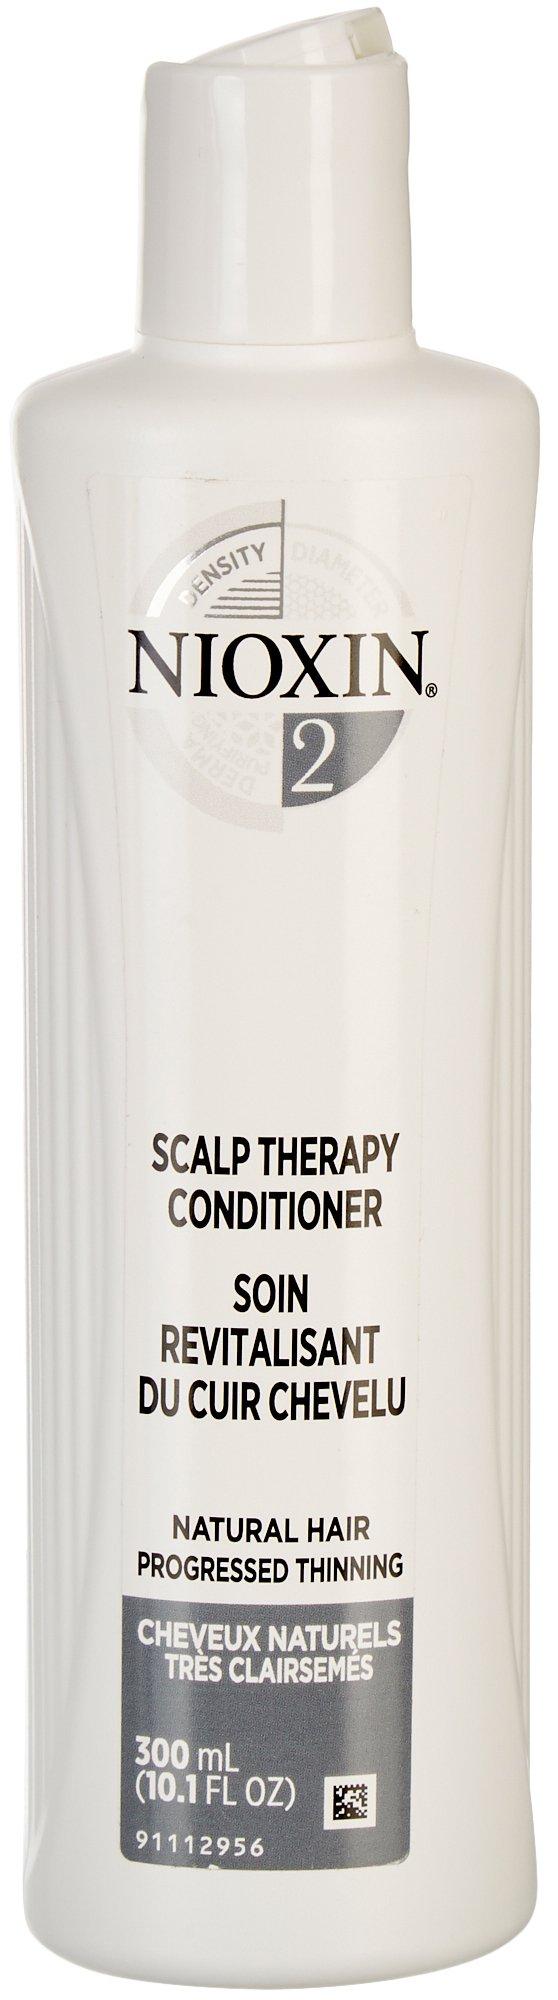 Nioxin 10.1 fl oz. No.2 Scalp Therapy Conditioner